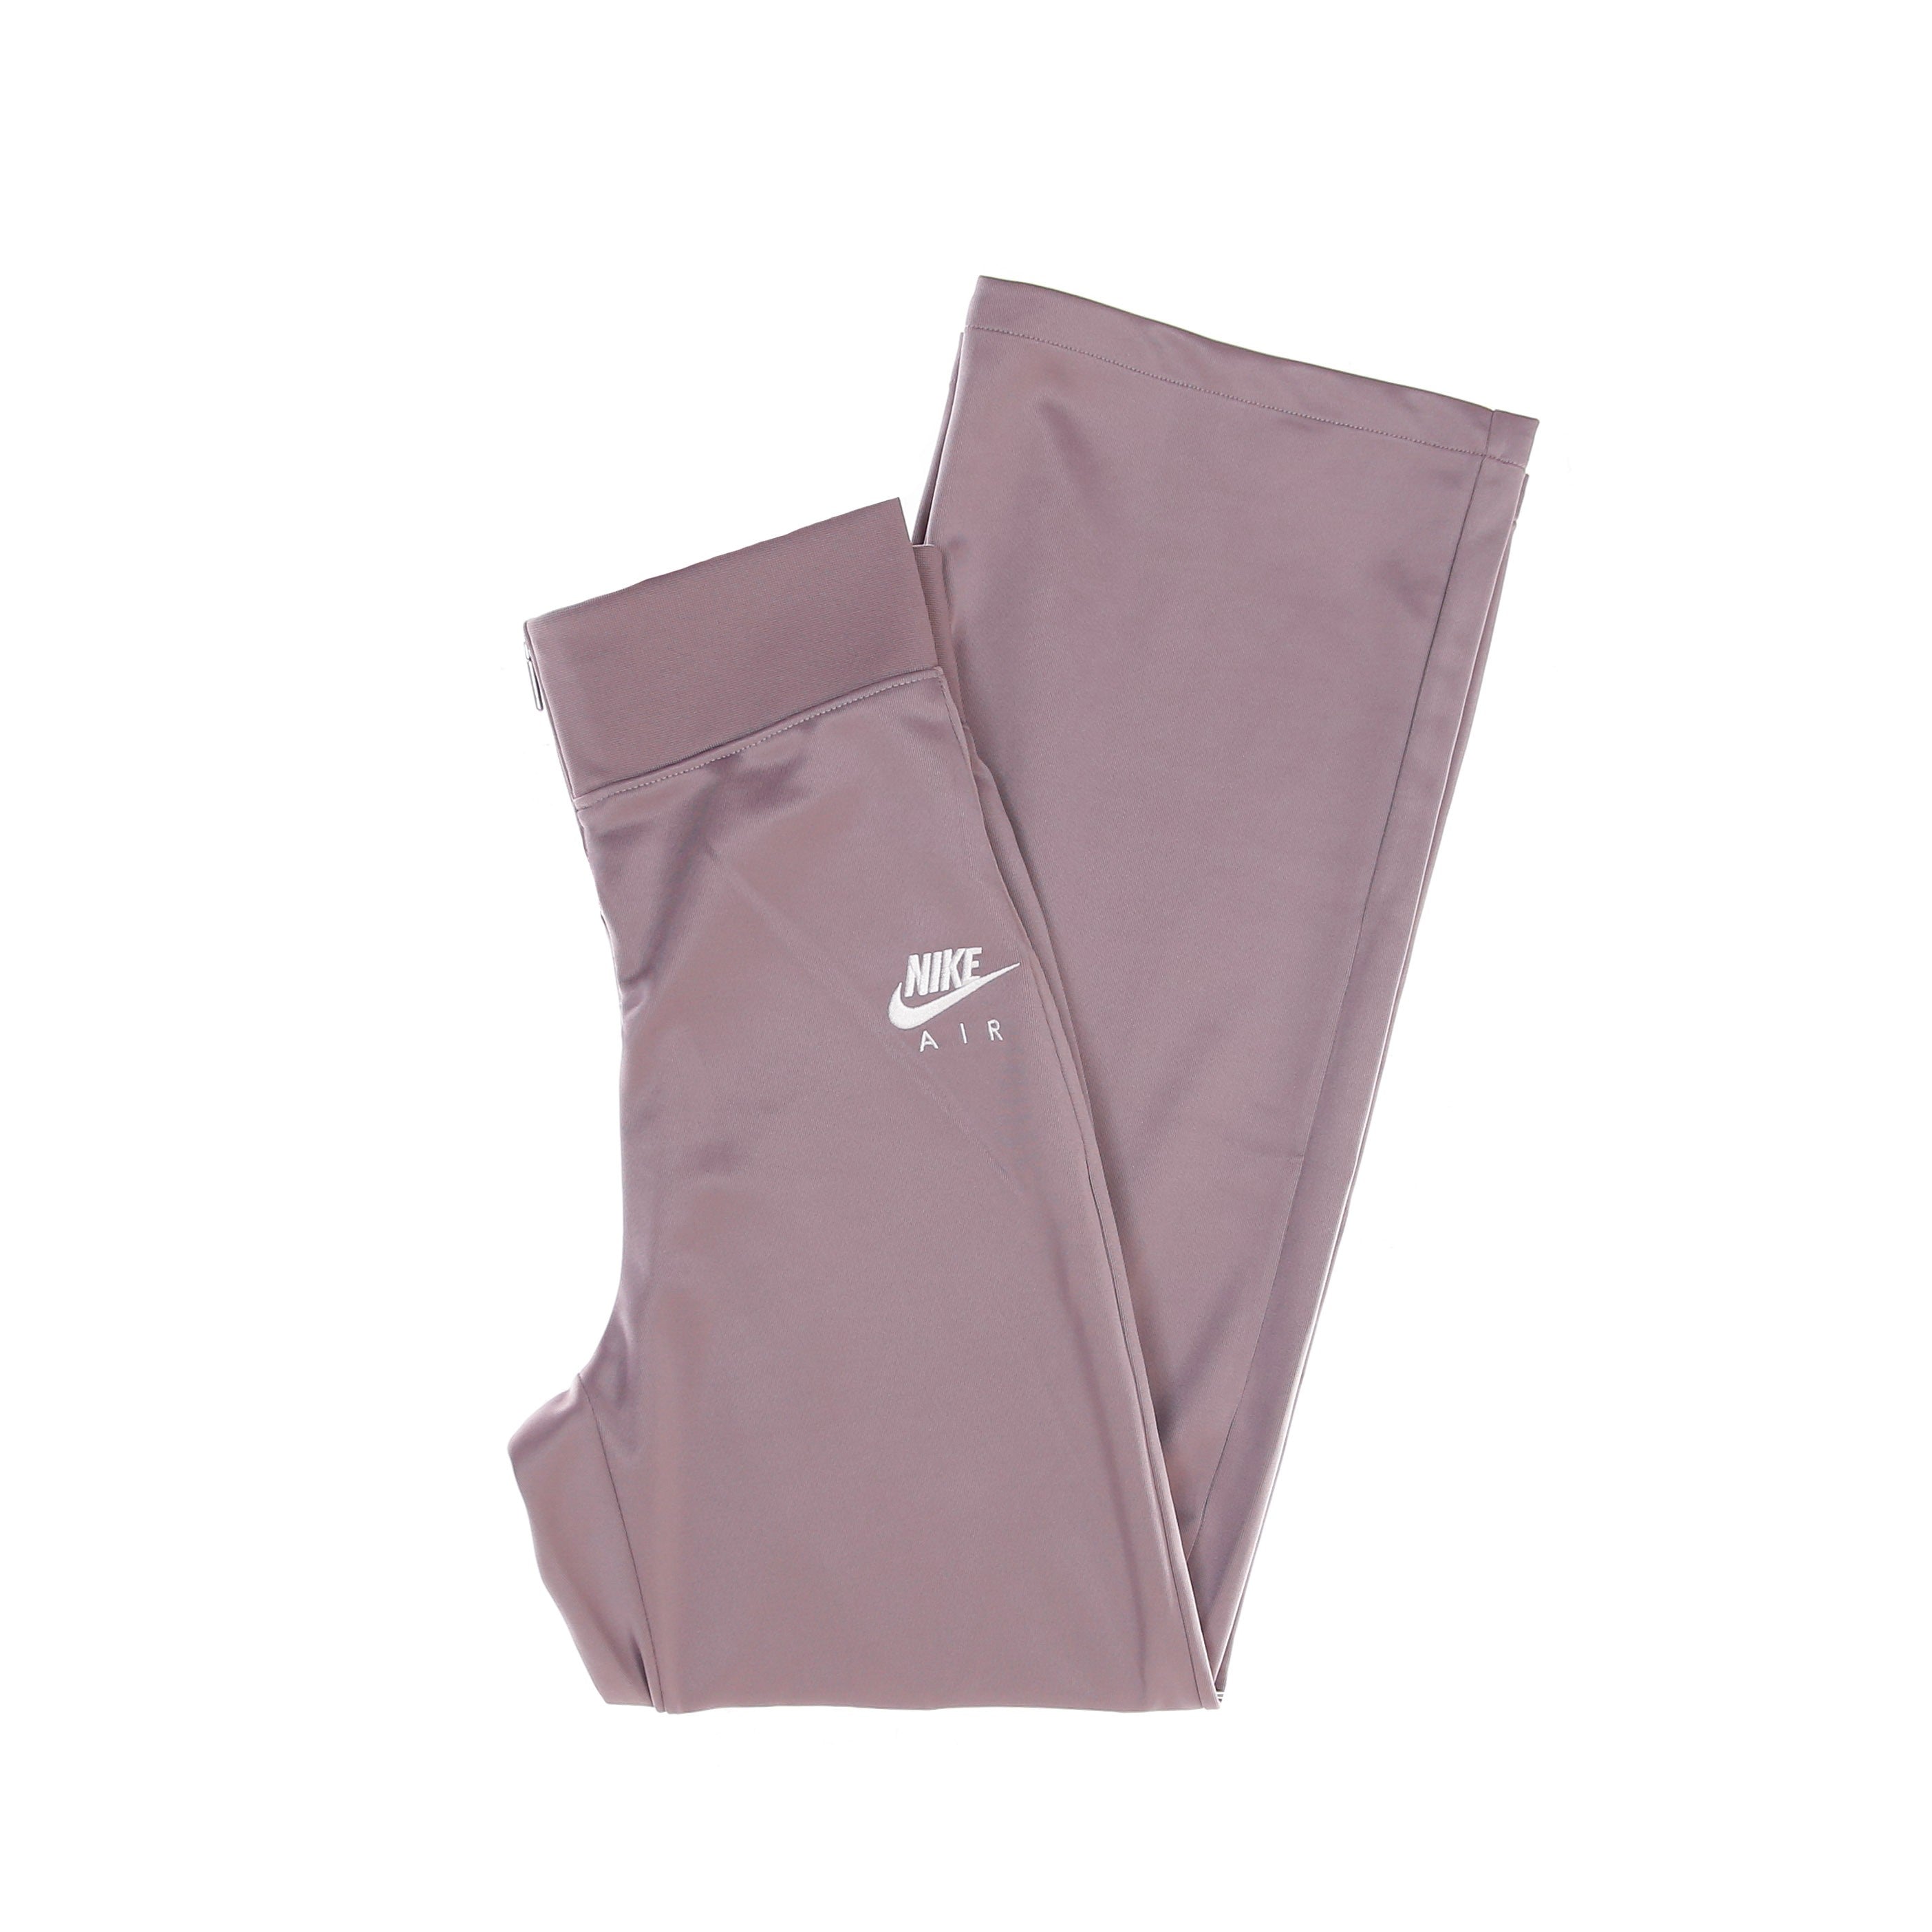 W Sportswear Air Pant Poly Knit Women's Long Pants Purple Smoke/white